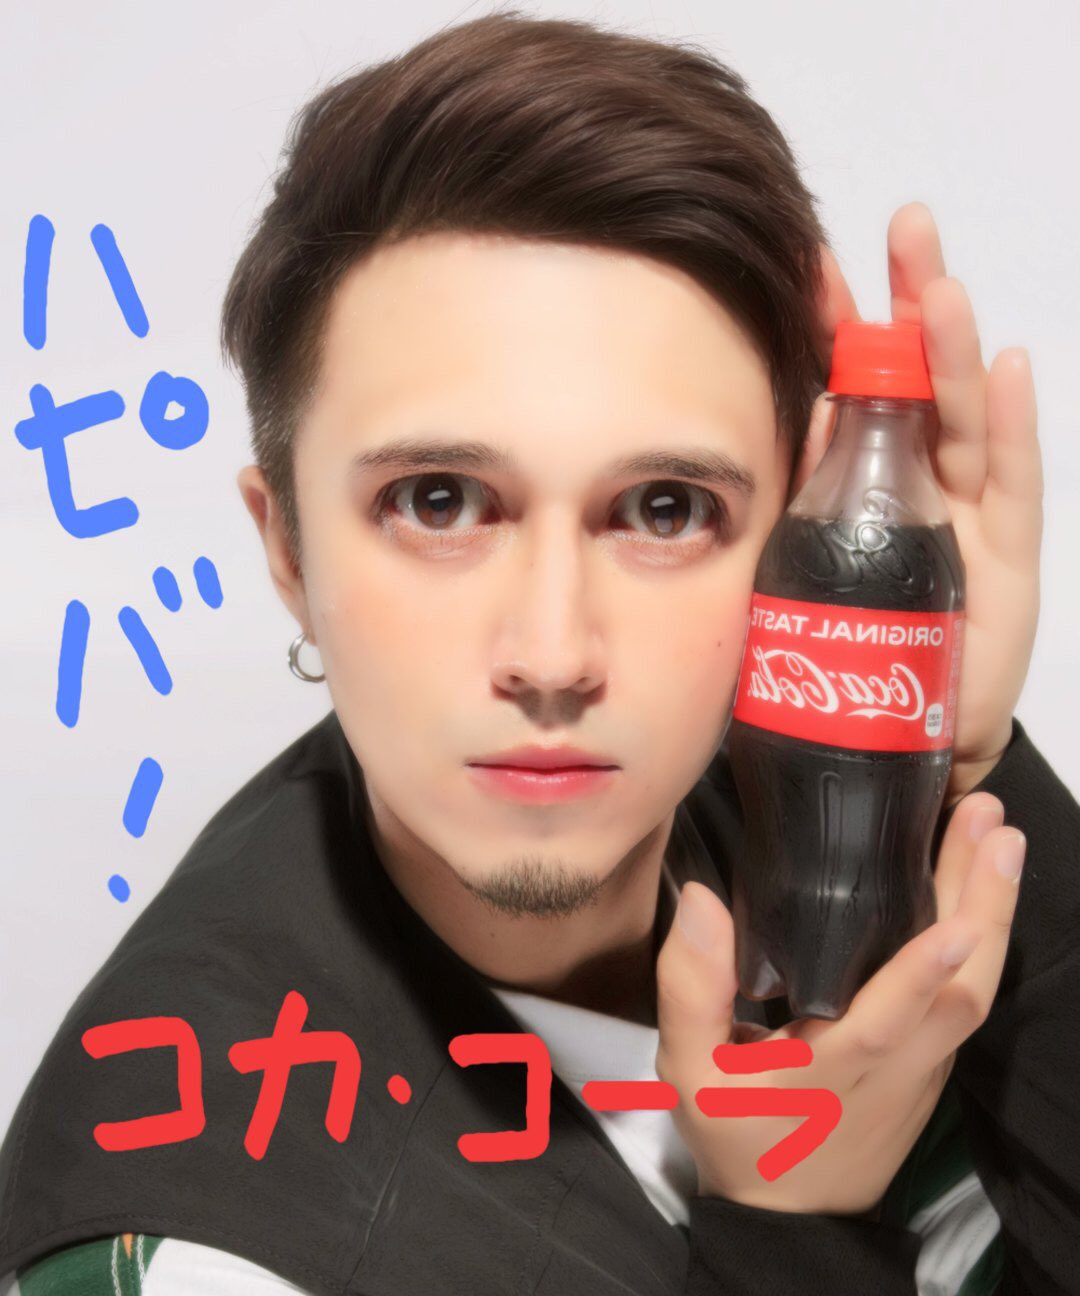 木村昴 コカ コーラ誕生135年を祝して はぴばコーラ コーラしか勝たん